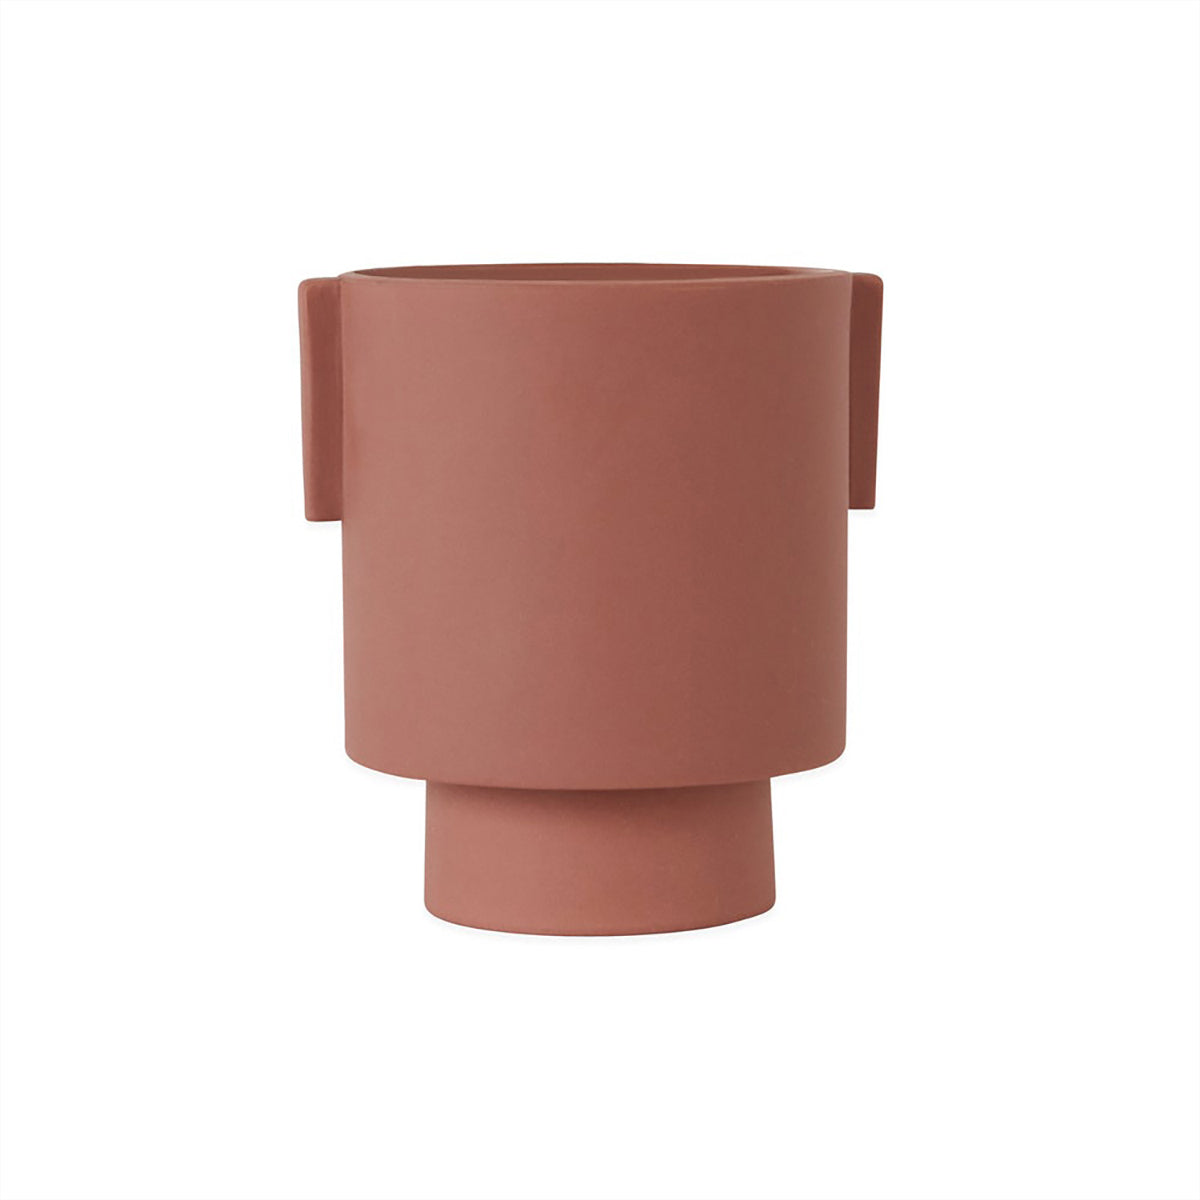 OYOY LIVING Inka Kana Pot - Medium Vase 405 Sienna